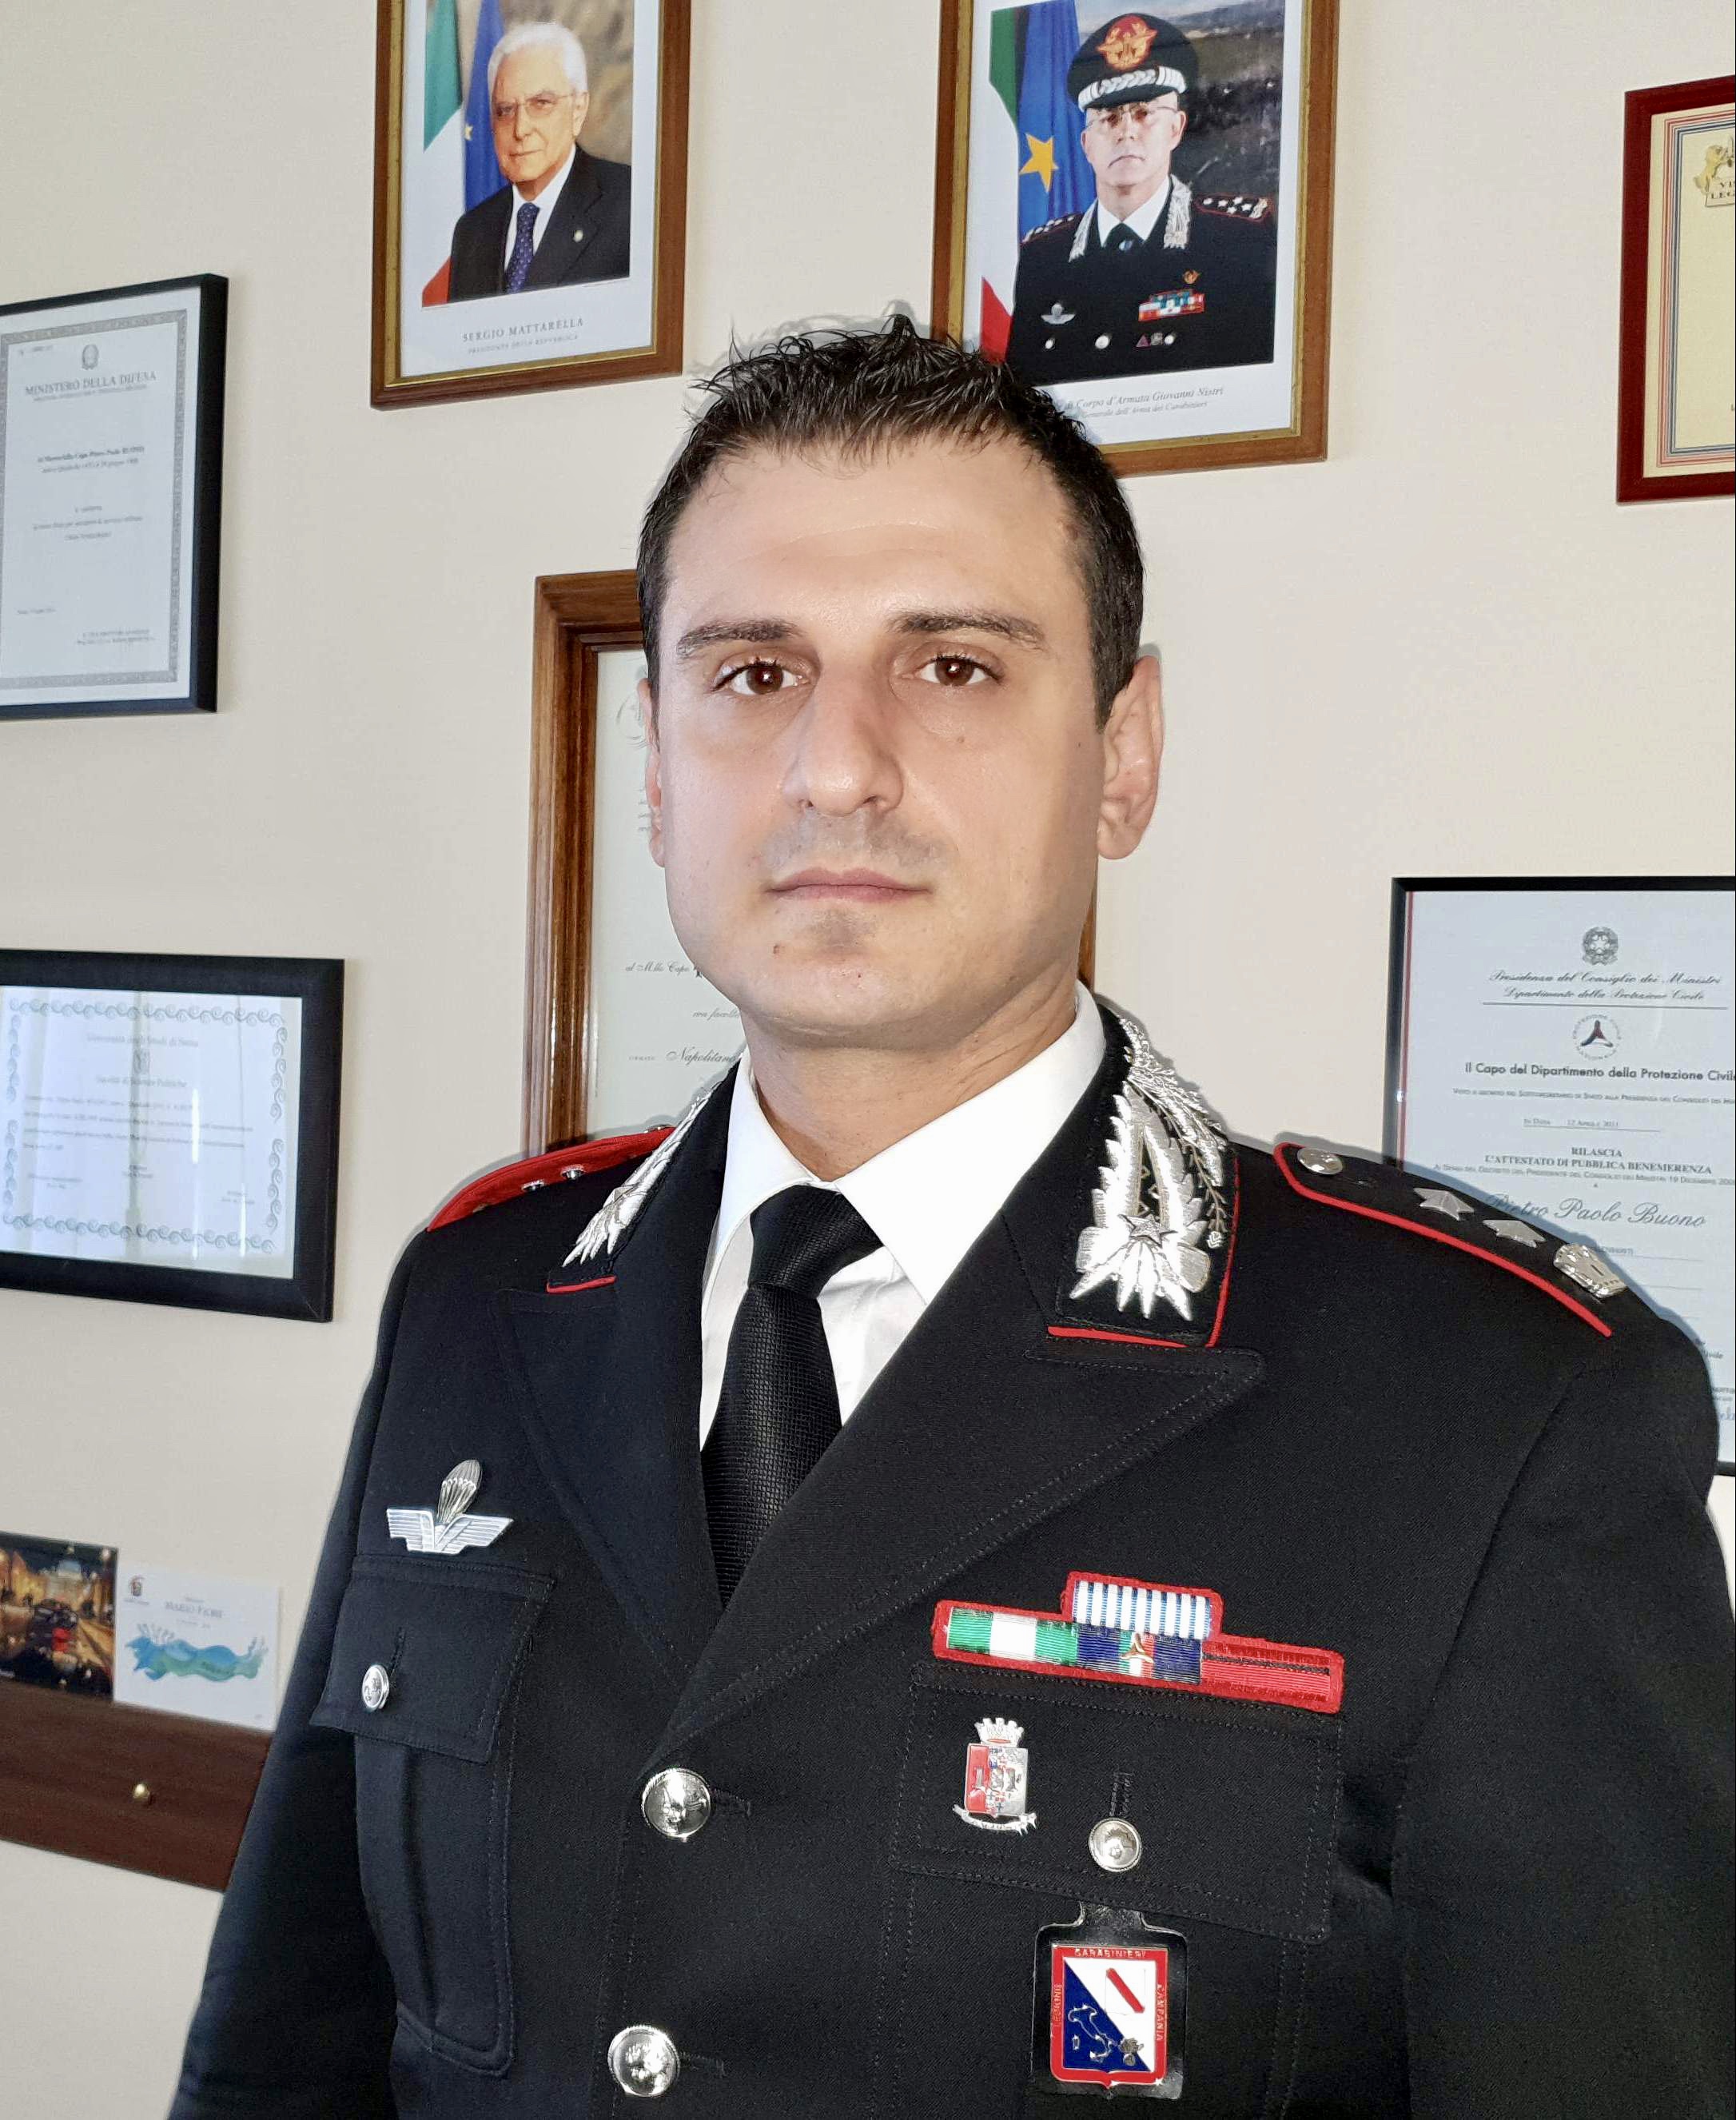 Avellino| Carabinieri, Nocerino promosso tenente colonnello e trasferito a Roma